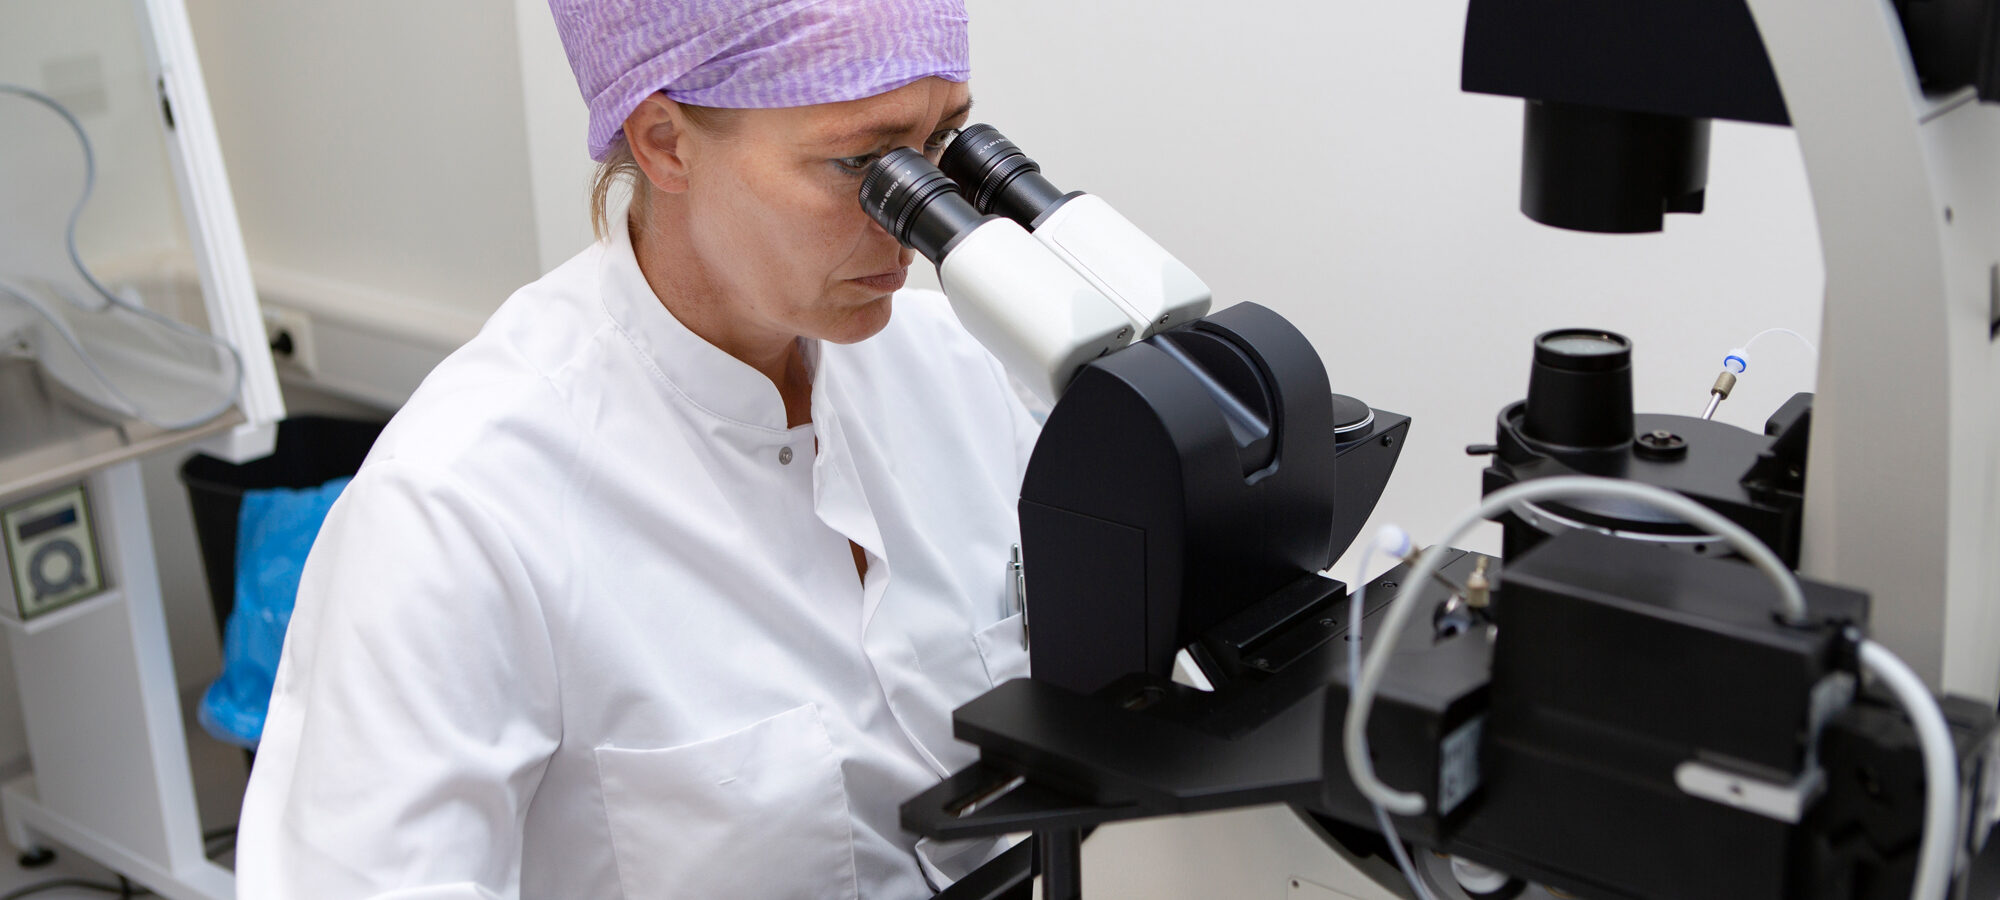 De analist beoordeelt dmv. microscoop de beweeglijkheid van het sperma